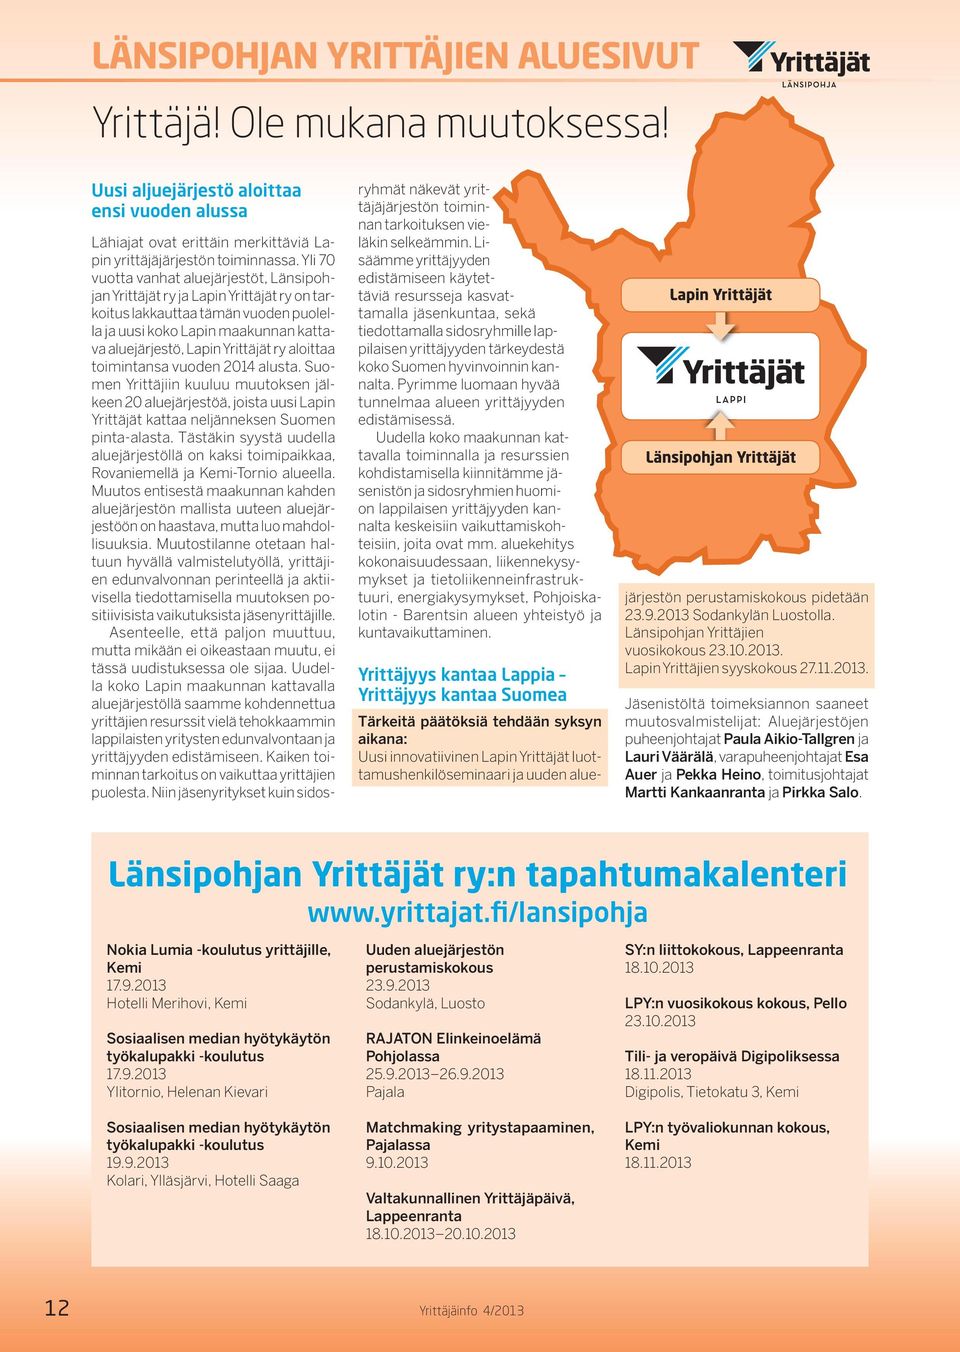 aloittaa toimintansa vuoden 2014 alusta. Suomen Yrittäjiin kuuluu muutoksen jälkeen 20 aluejärjestöä, joista uusi Lapin Yrittäjät kattaa neljänneksen Suomen pinta-alasta.